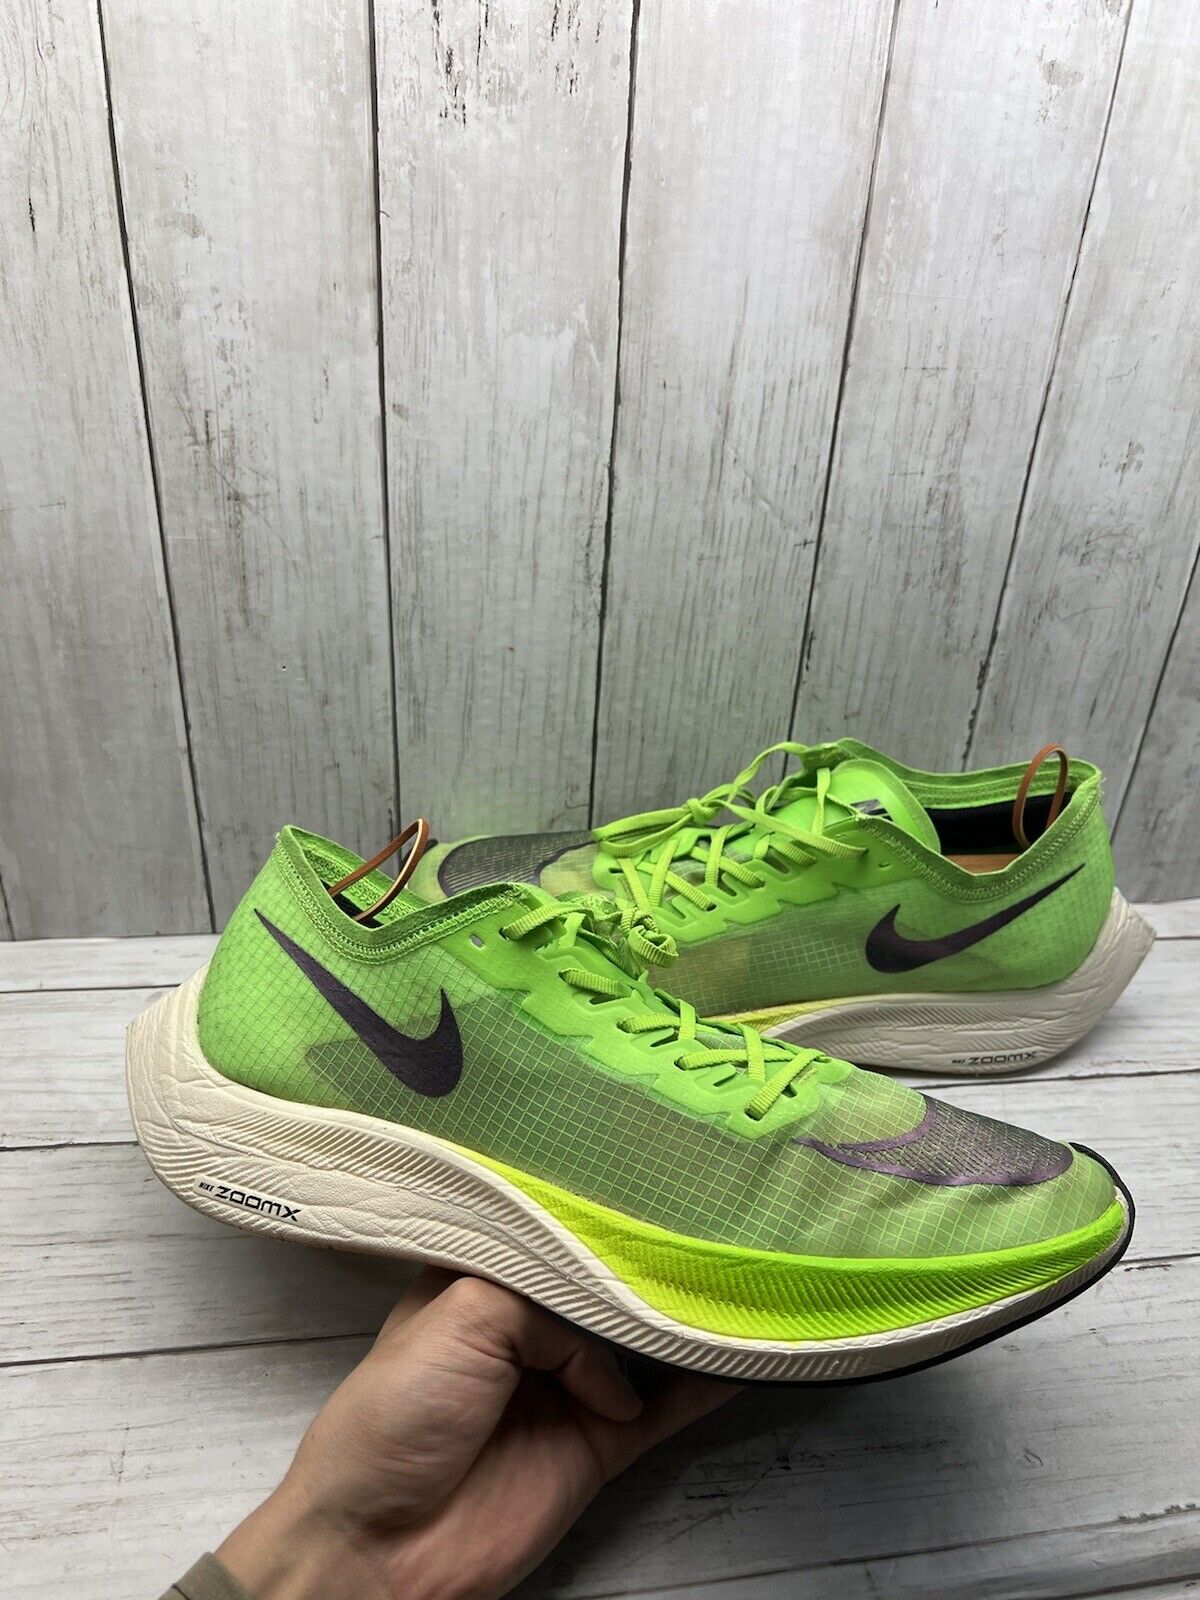 Adelaida equilibrio Modales Nike ZoomX VaporFly Next% Zapatillas de running AO4568-300 Hombre Sz 12 -  Verde eléctrico | eBay